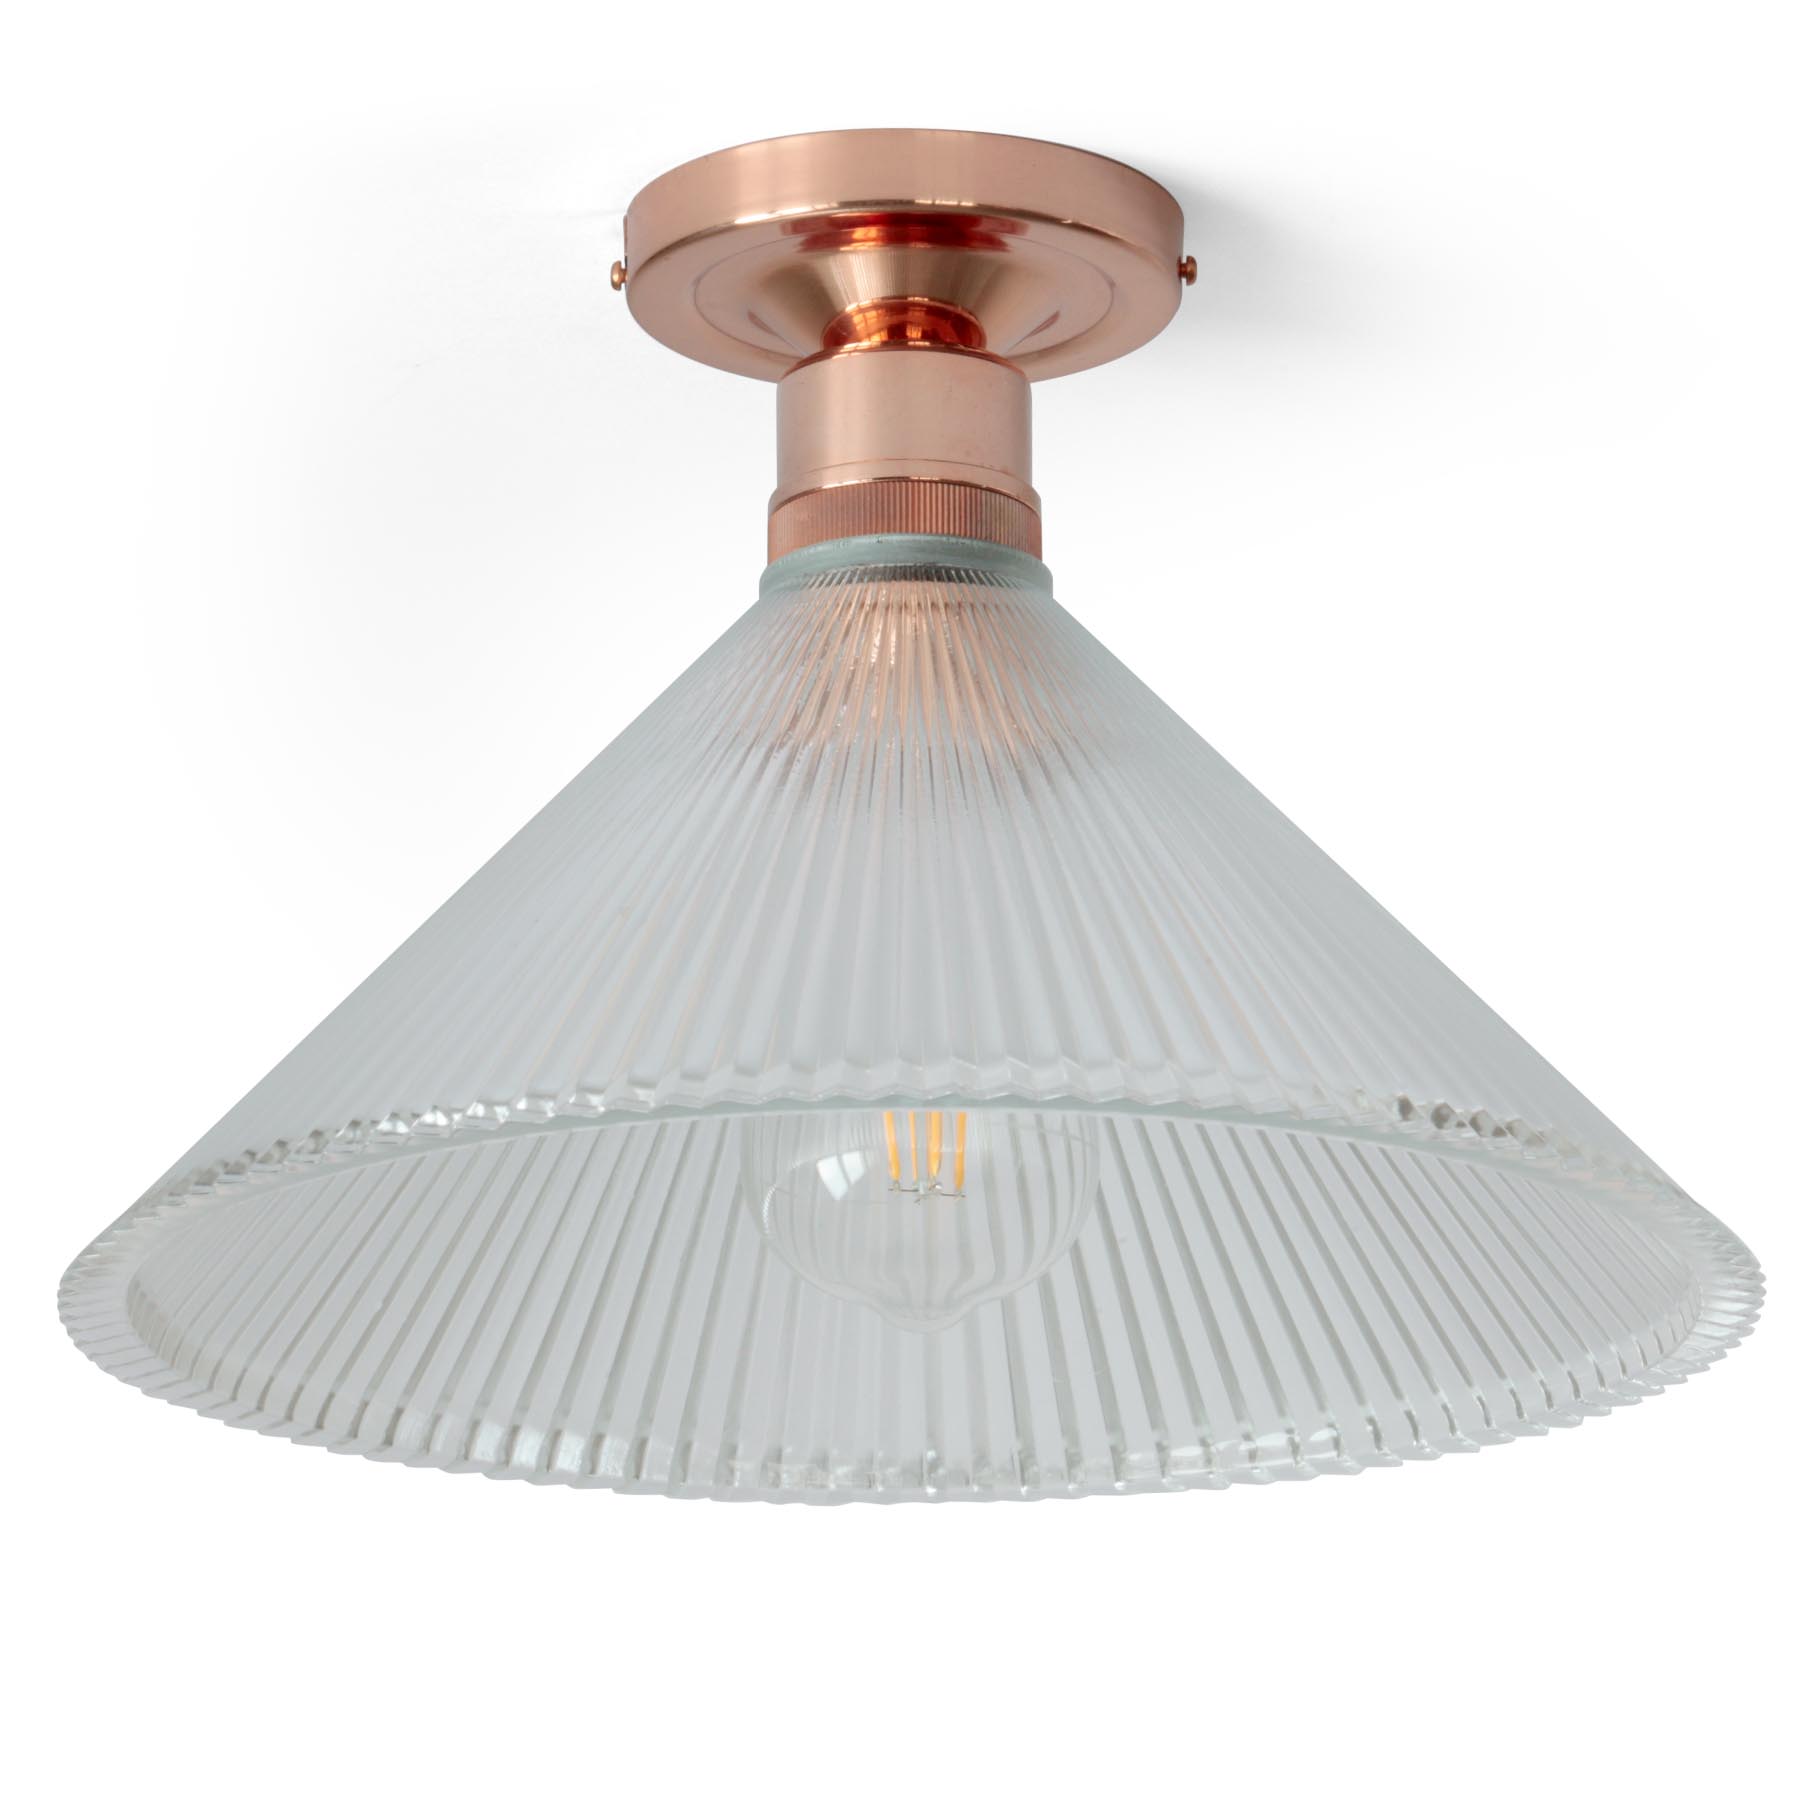 Deckenlampe mit prismatischem Kegel-Glasschirm Ø 30 cm